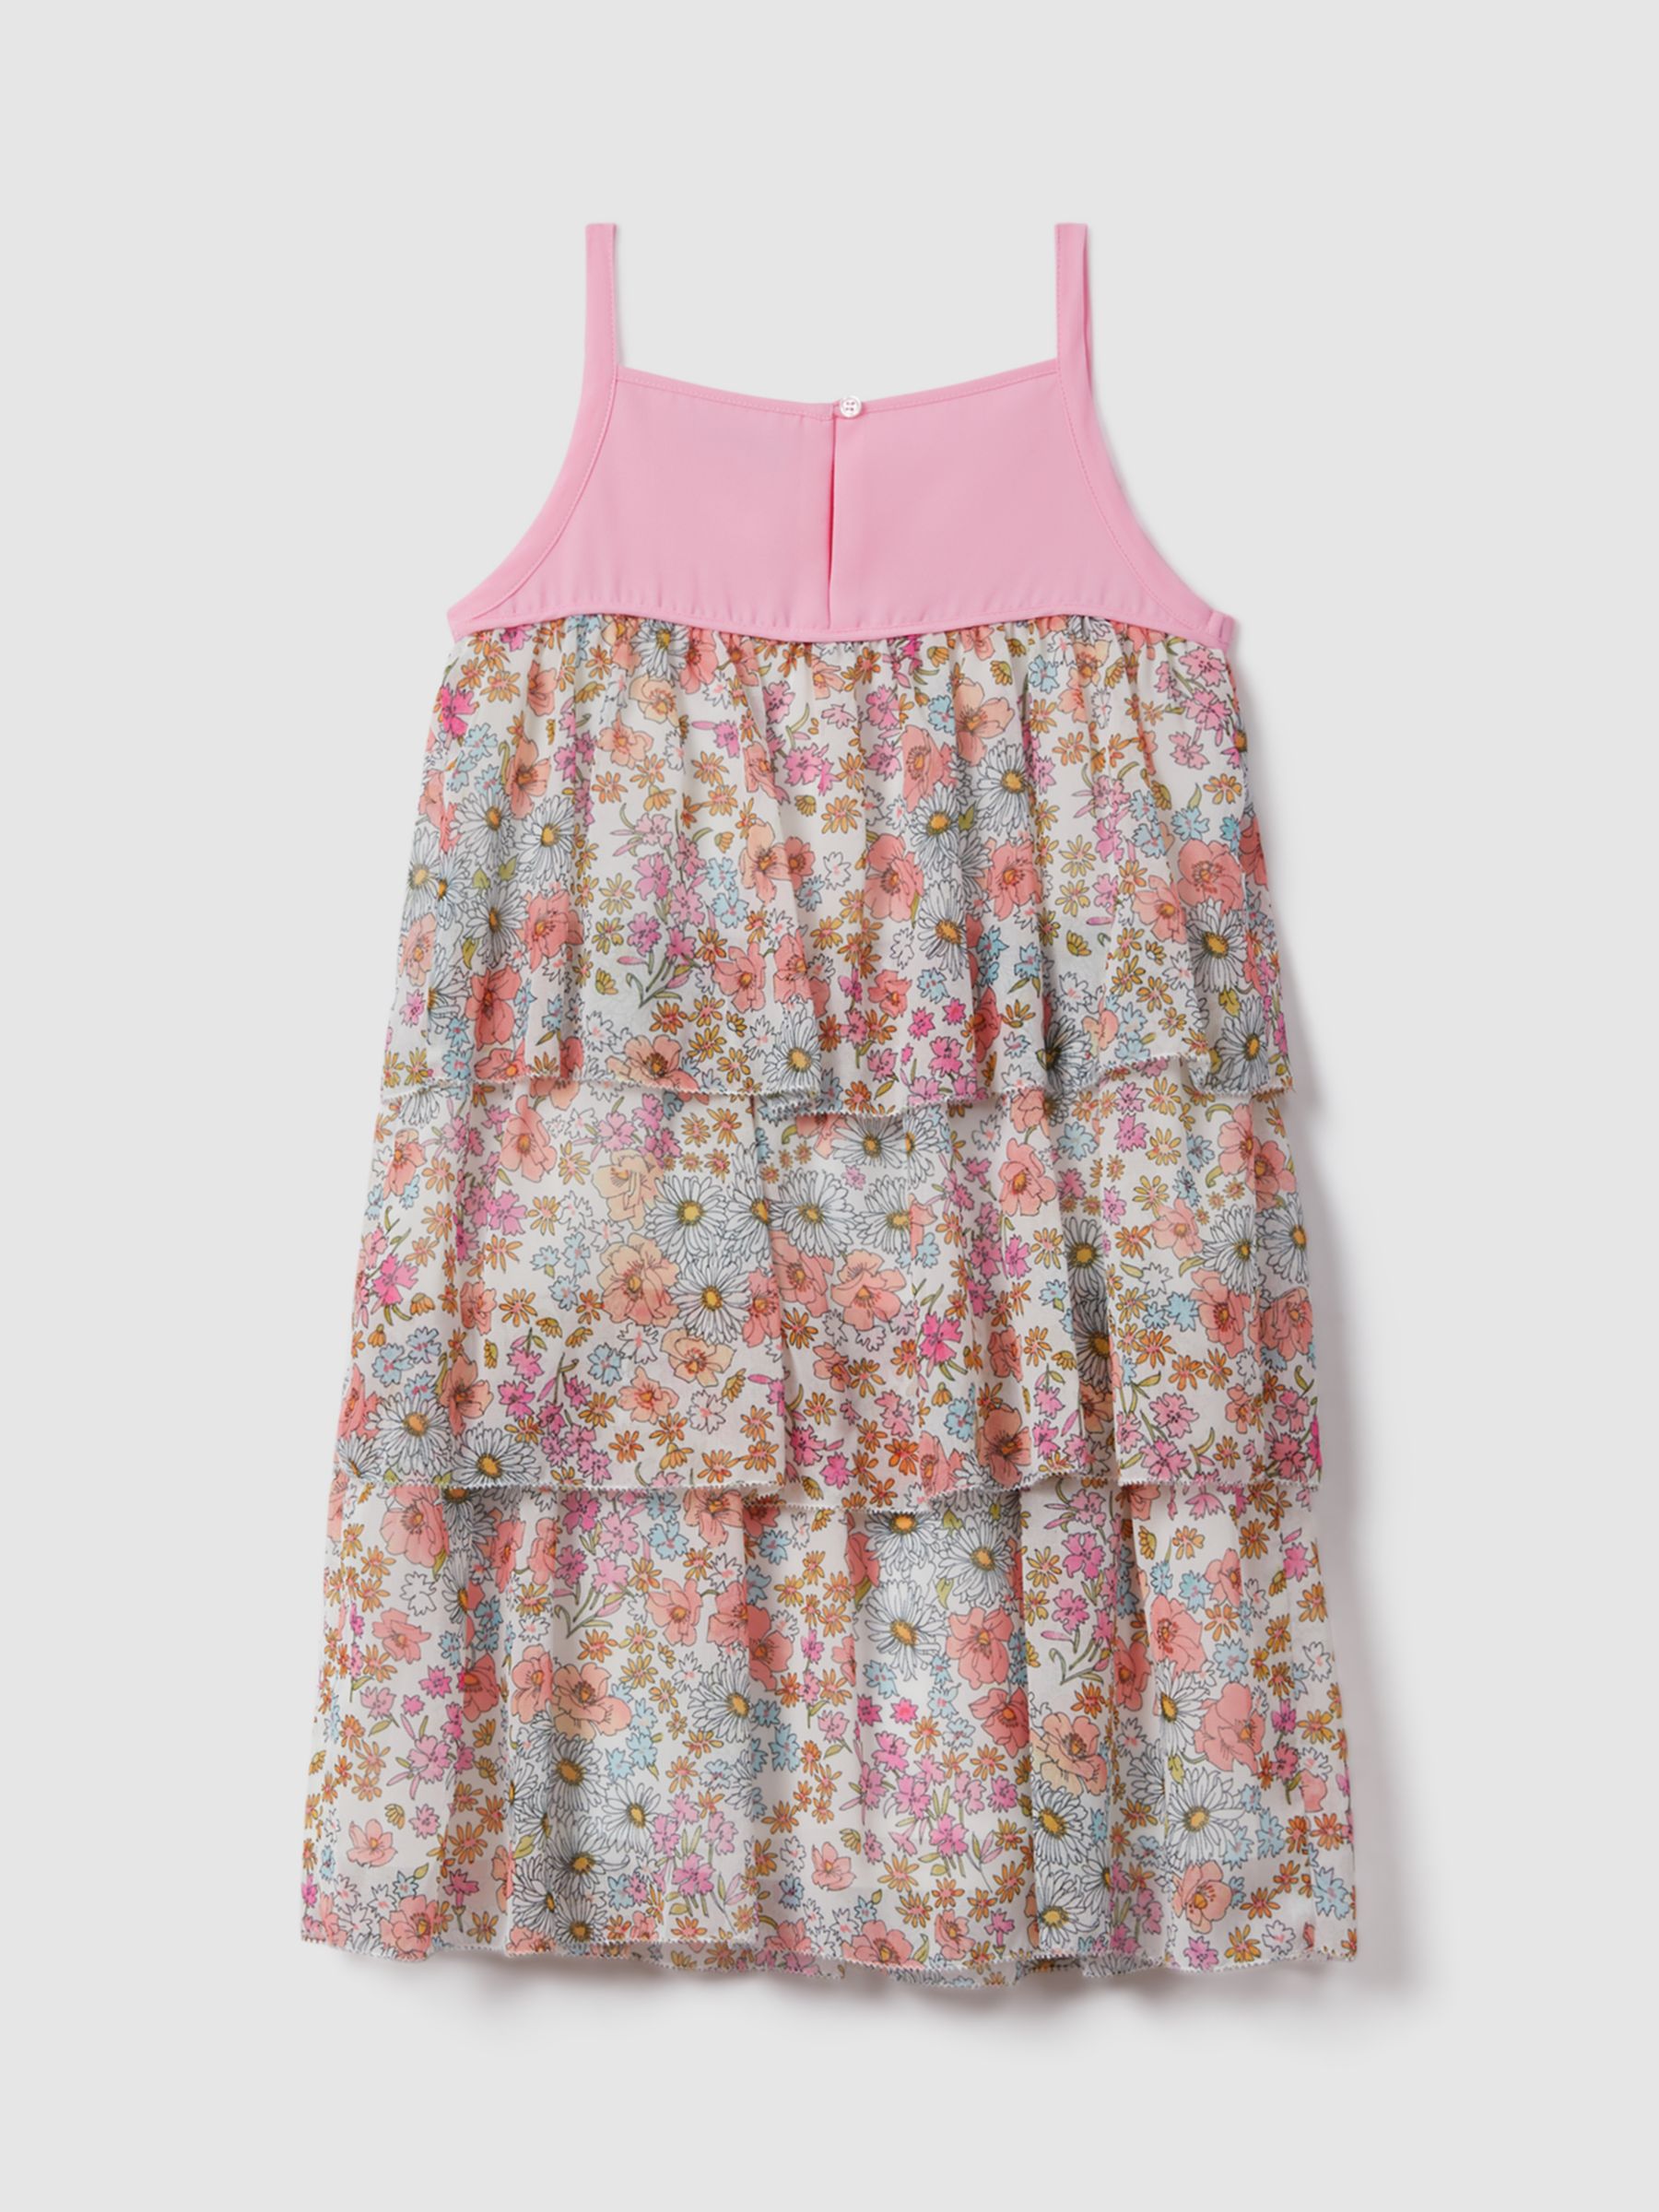 Reiss Kids' Leela Floral Print Summer Dress, Pink/Multi, 4-5 years